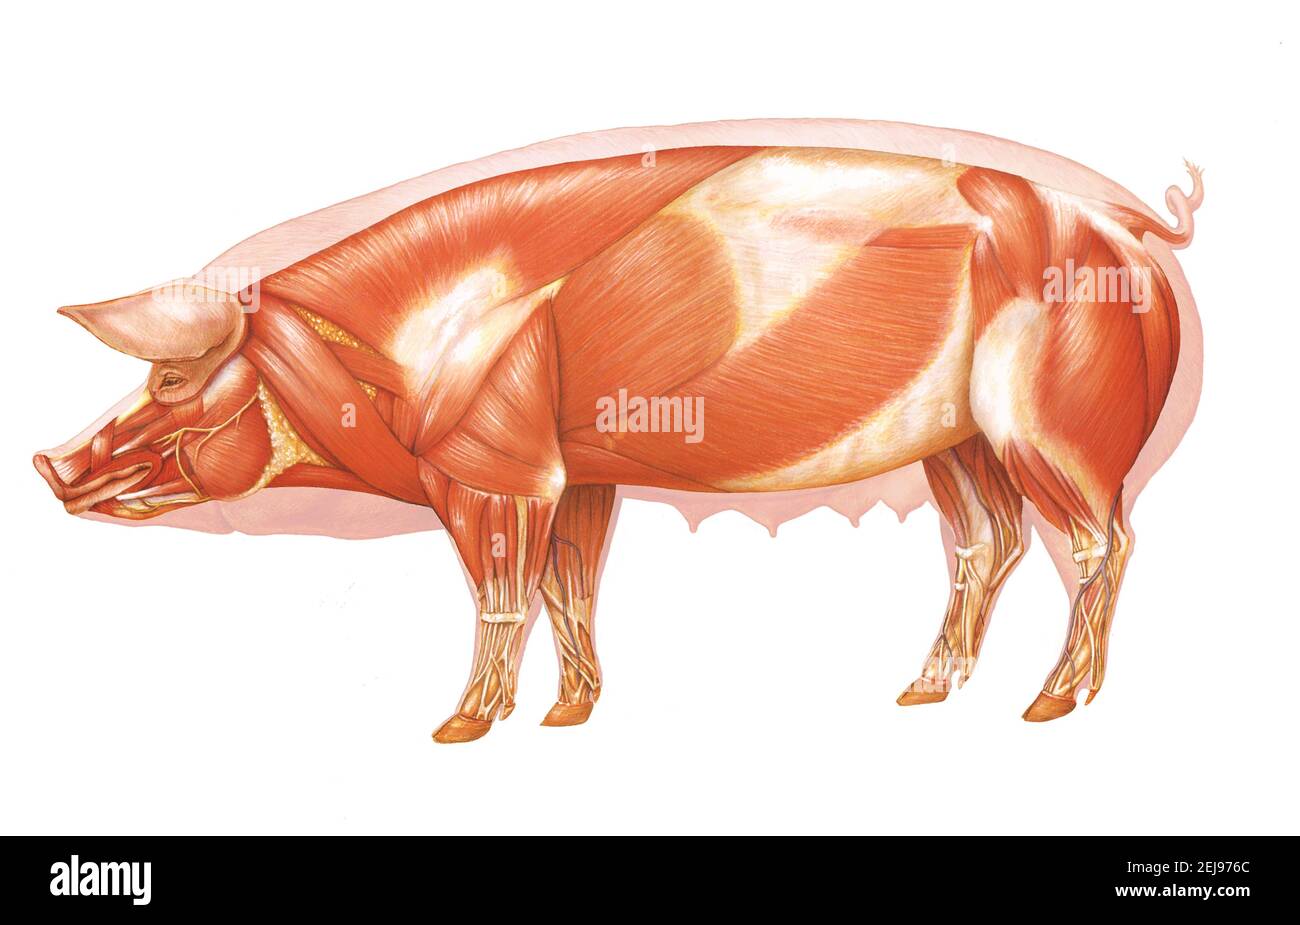 Anatomie du porc, dessin Banque D'Images